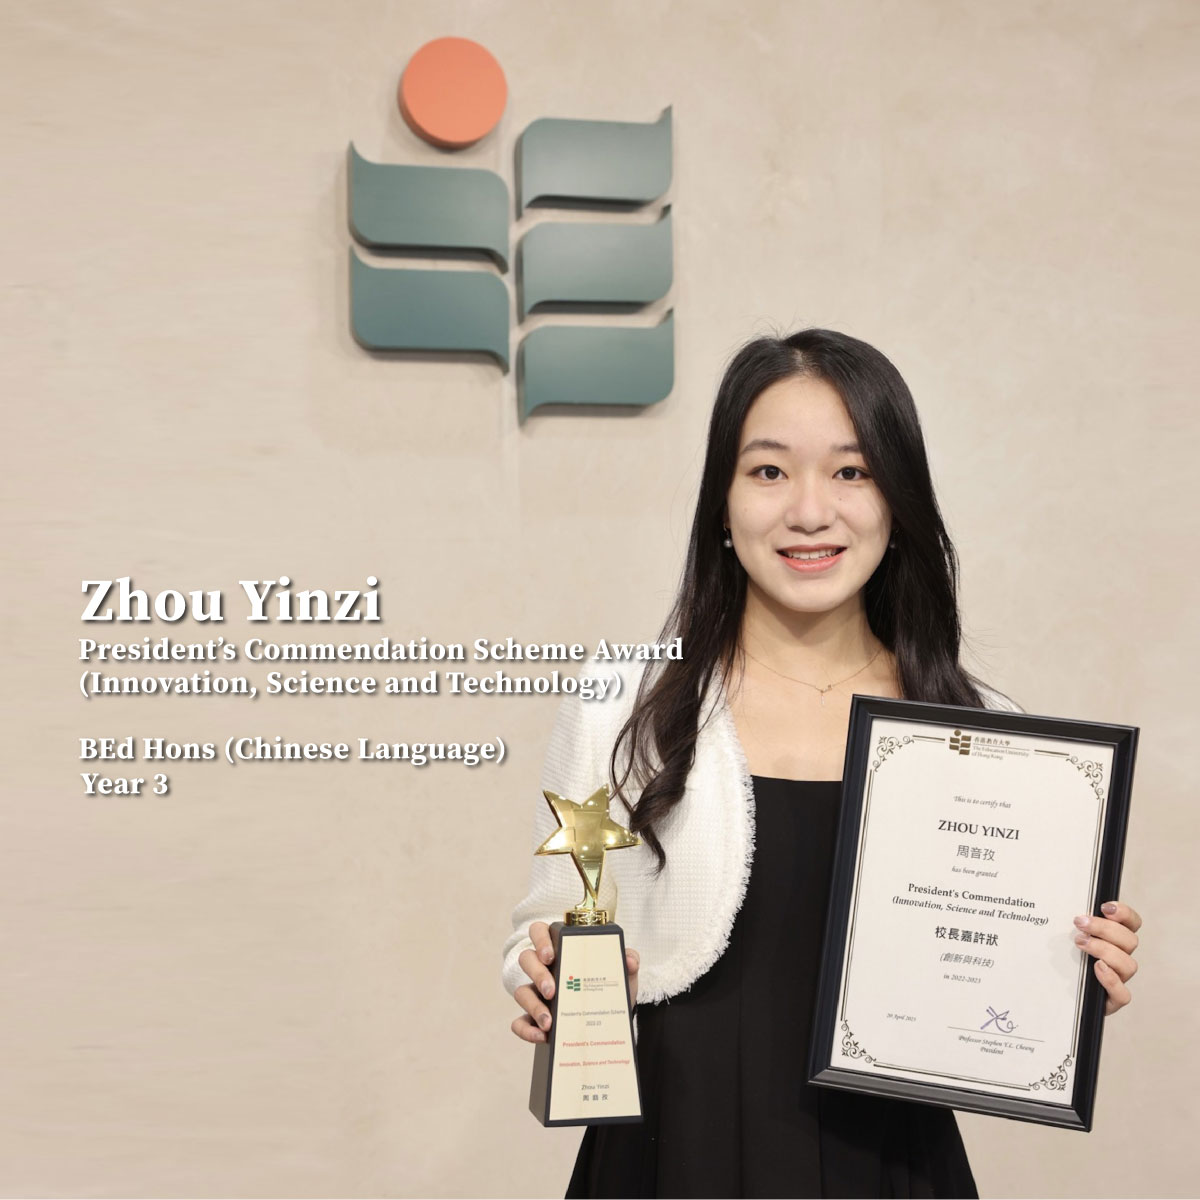 在本学年(2022/23)的教大「校长嘉许计画」中，中国语文教育荣誉学士三年级学生周音孜于「创新与科技」类别荣获最高殊荣 ――「校长嘉许状」，以表扬她过去一年在学术以外的杰出表现。  周同学不仅是中国实用新型专利第一发明人，亦是2022 年湖南创新创业青年代表。在2022 年第九届「创青春」湖南省青年创新创业大赛总决赛中，她更获得二等奖的佳绩。  教大于2010/11年度设立「校长嘉许计画」，所有全日制学生均可参加。计画旨在嘉许学生在非学术范畴上的杰出表现，包括「艺术及文化」、「社会服务」、「领袖才能」、「体育」及「创新与科技」。计画推行至今，已有逾130名学生及队伍获得嘉许。  有关「校长嘉许计画2022/23」得奖学生简介，可浏览：https://eduhk.hk/sao/upload/files/1/file/6461a0c6982a7.pdf